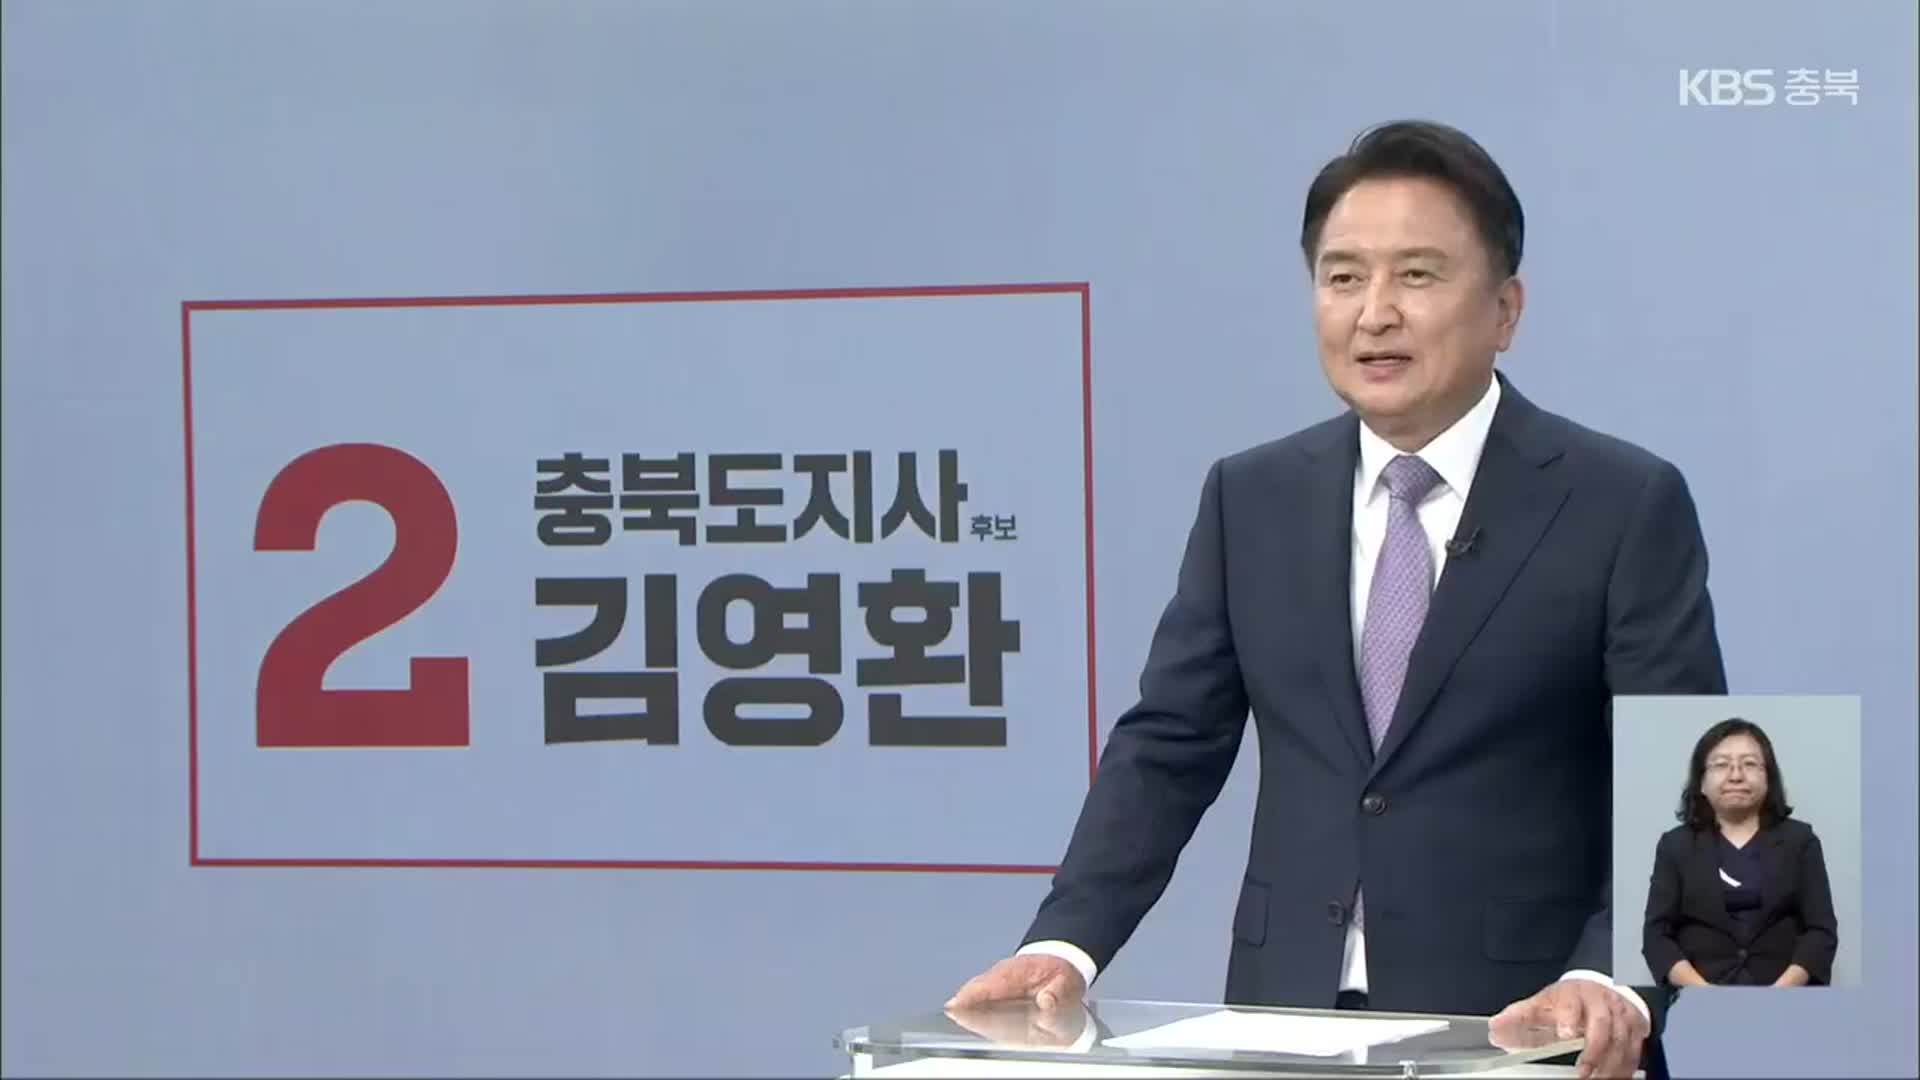 [풀영상] 2022지방선거 방송연설 - 김영환 충북도지사 후보